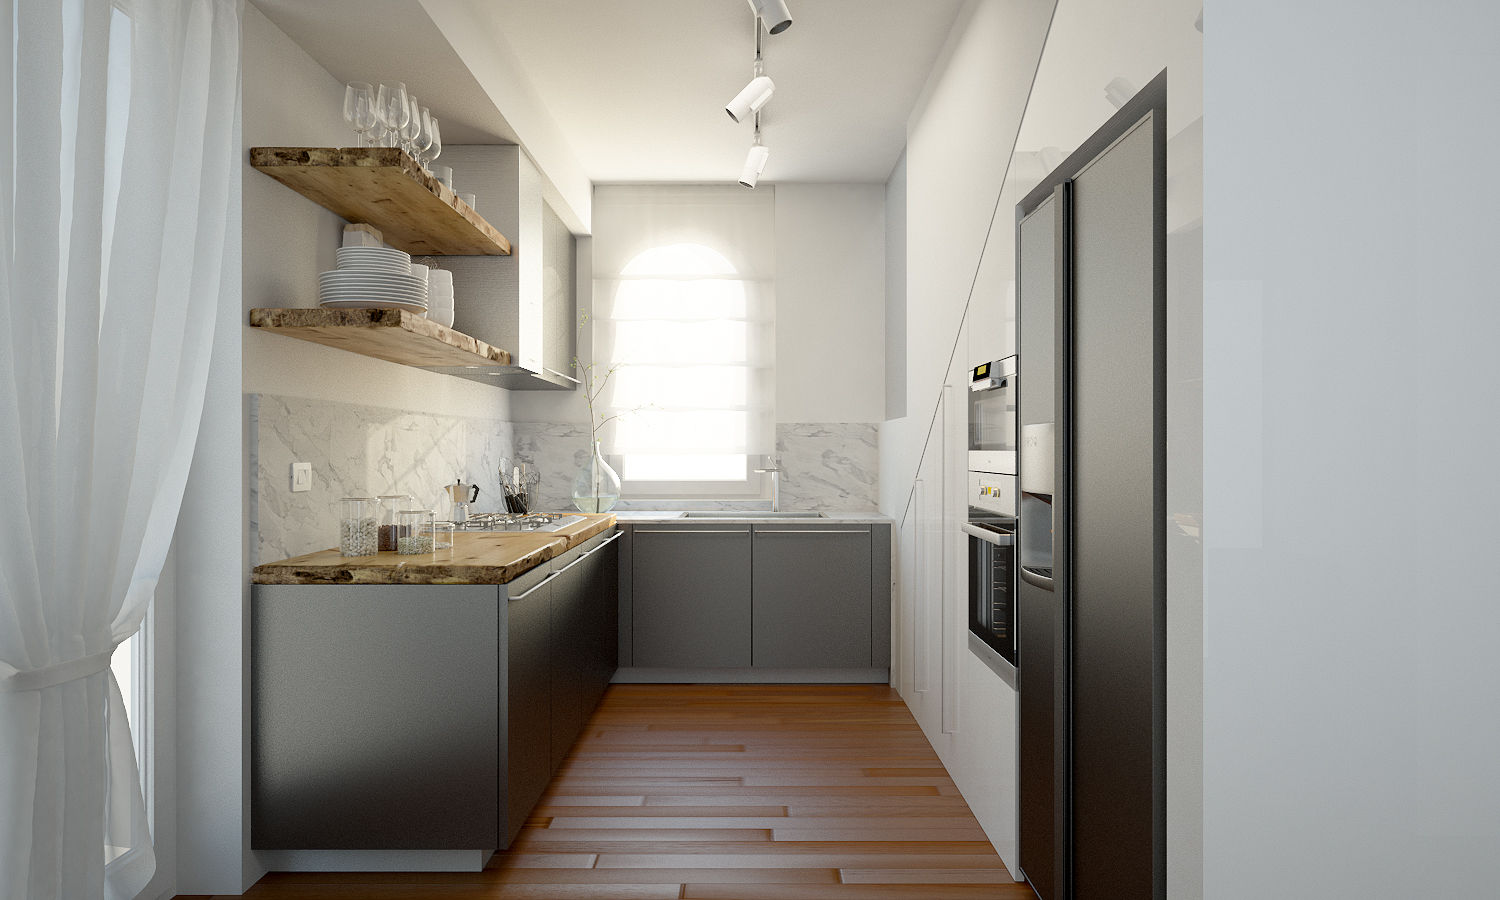 Render foto-realistico zona cucina QUADRASTUDIO cucina nera,piano di lavoro cucina,mensole,legno